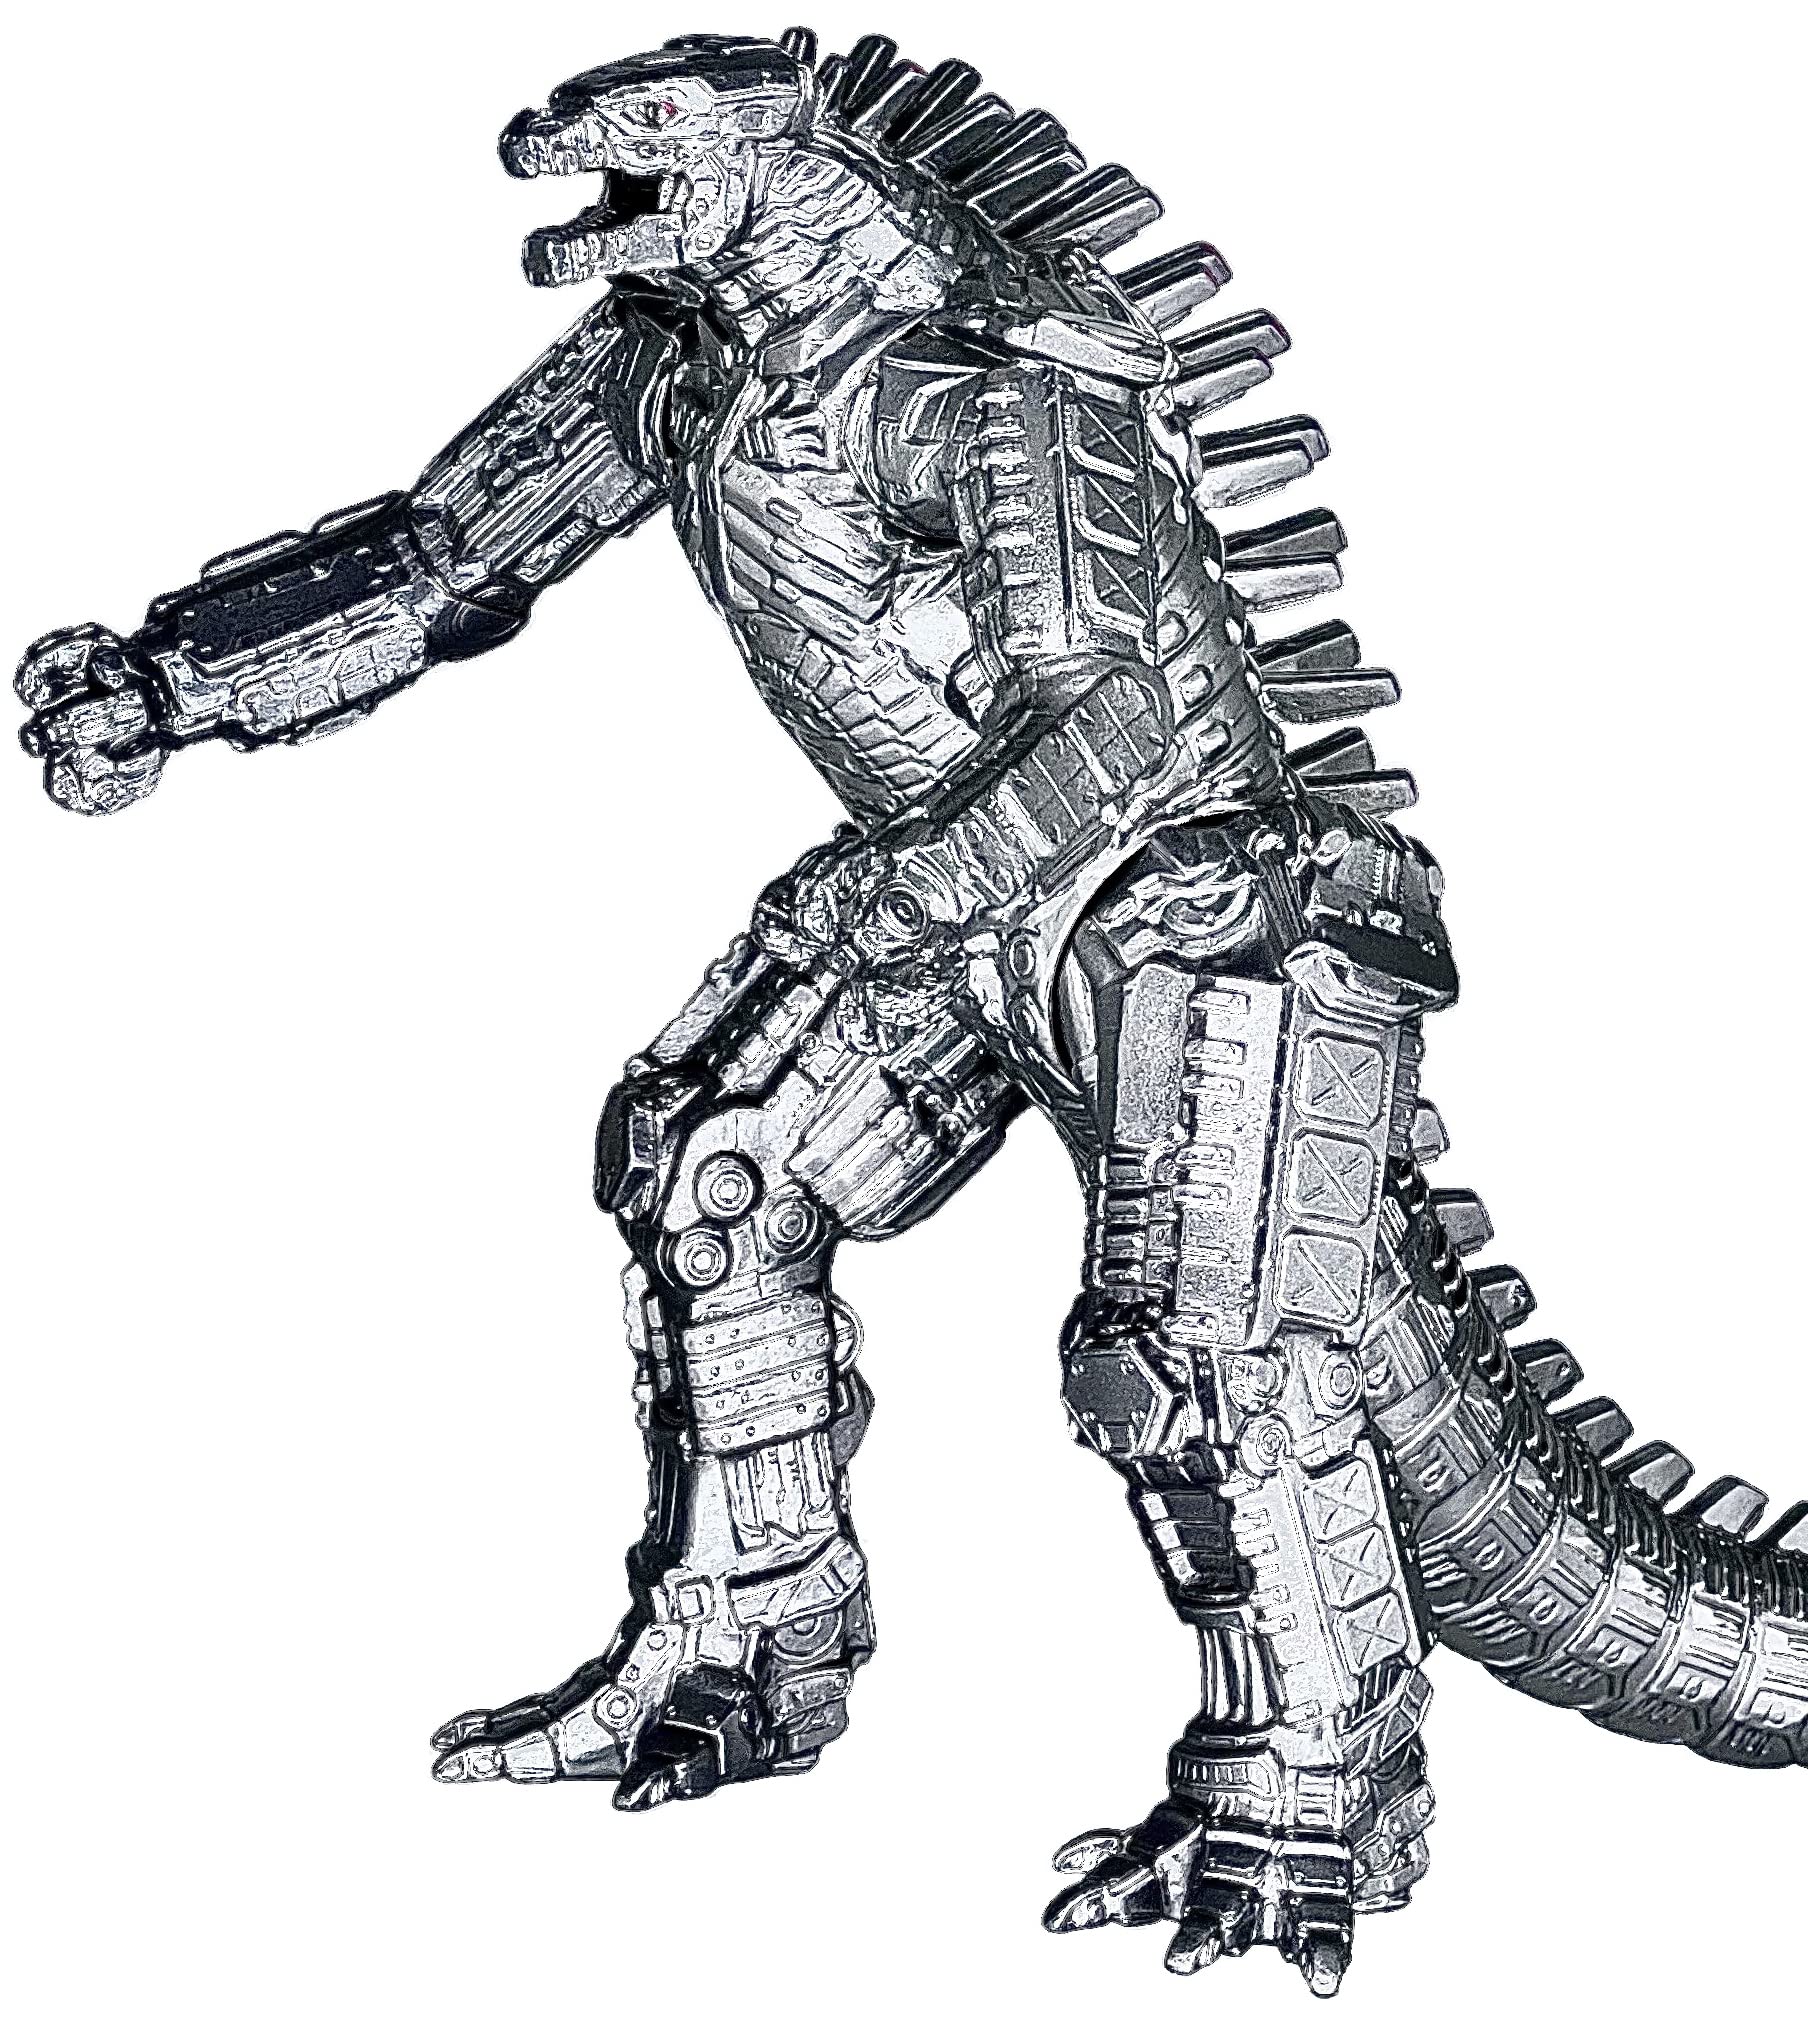 MechaGodzilla - một phiên bản kỹ thuật cao của Godzilla được ra đời để chống lại kaiju. Xem những hình ảnh của MechaGodzilla để thấy sự khác biệt và sức mạnh mà phiên bản này mang lại.